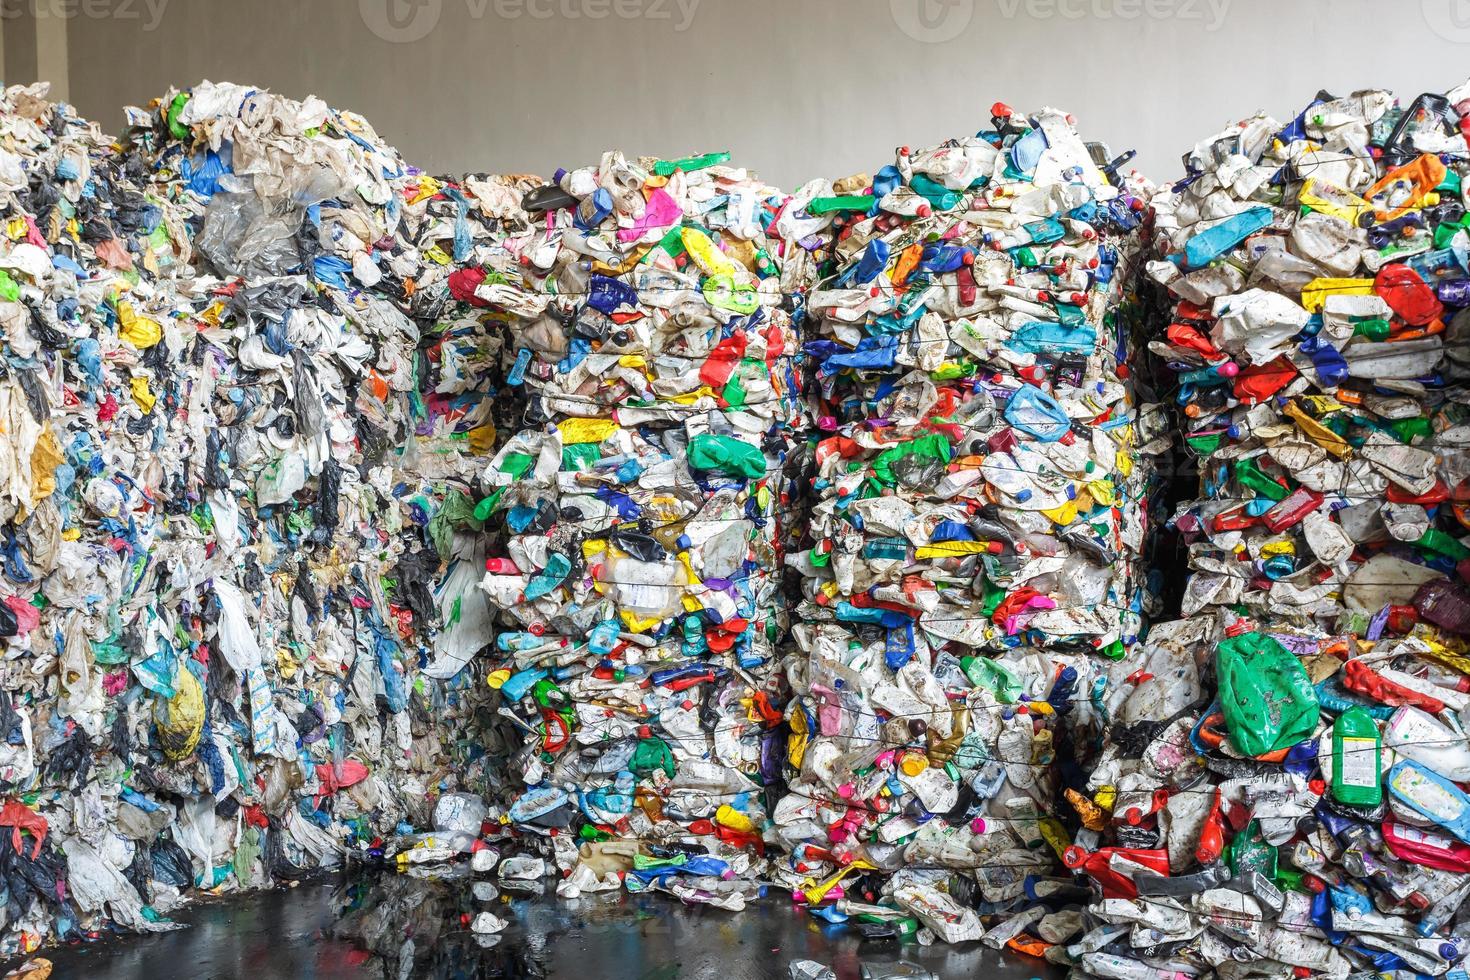 Plastikballen in der Abfallverwertungsanlage. getrennte Müllabfuhr. Recycling und Lagerung von Abfällen zur weiteren Entsorgung. Unternehmen für die Sortierung und Verarbeitung von Abfällen. foto